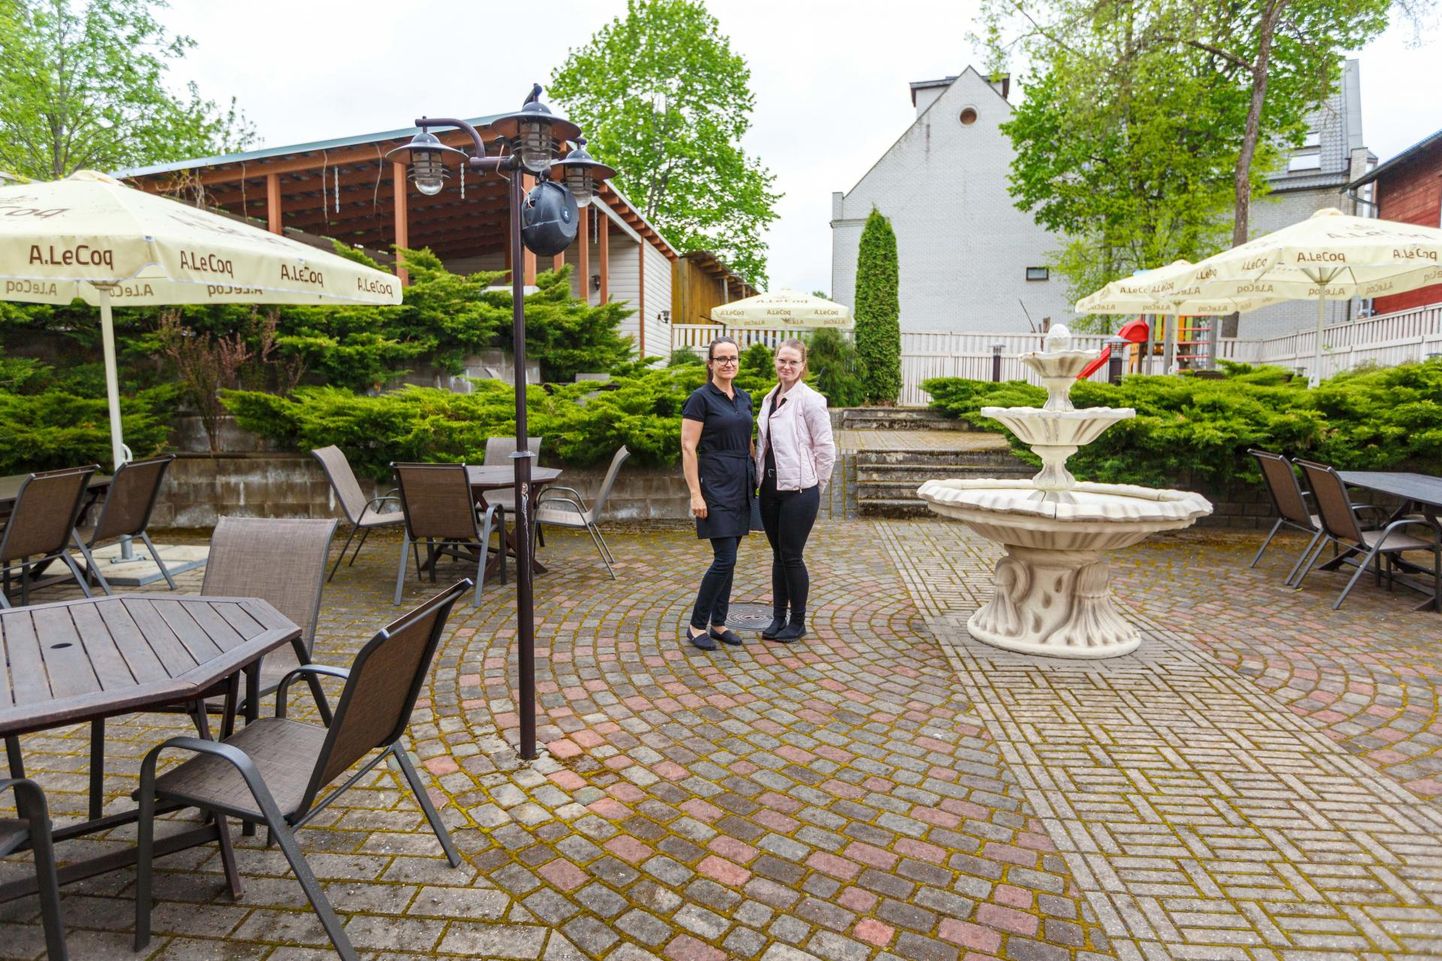 Restorani Lilli juhataja Maarika Kütt (vasakul) ja teenindaja Grete toitlustuskoha terrassil, kus esmaspäeva lõuna ajal valitses ebasoodsa ilma tõttu kliendipõud.